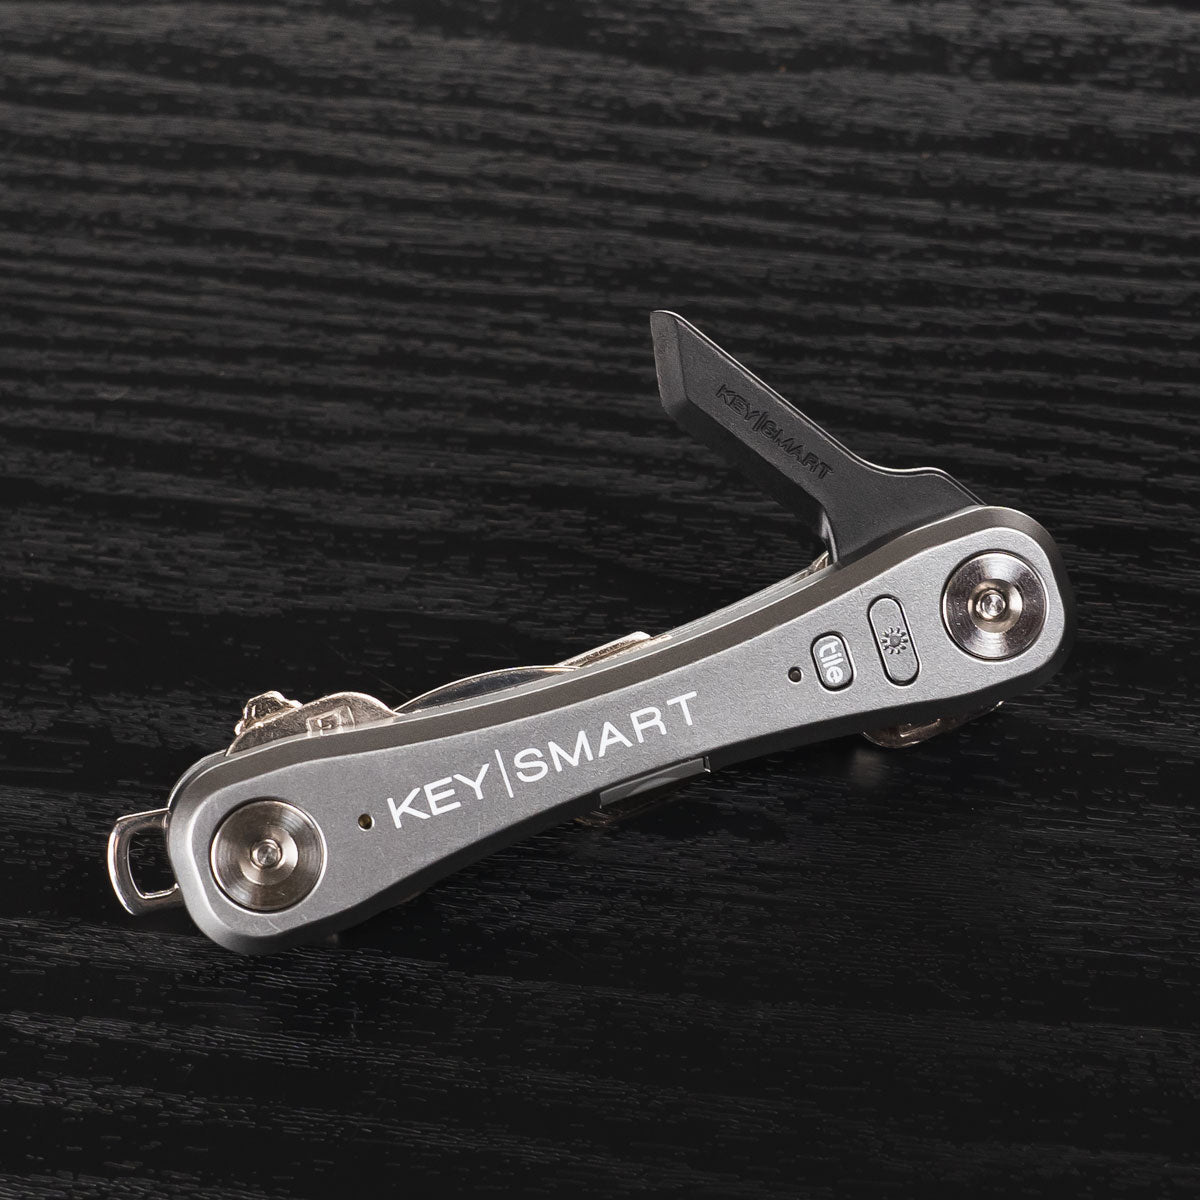  KeySmart Safe Box Cutter - Key-Shaped Safe Package